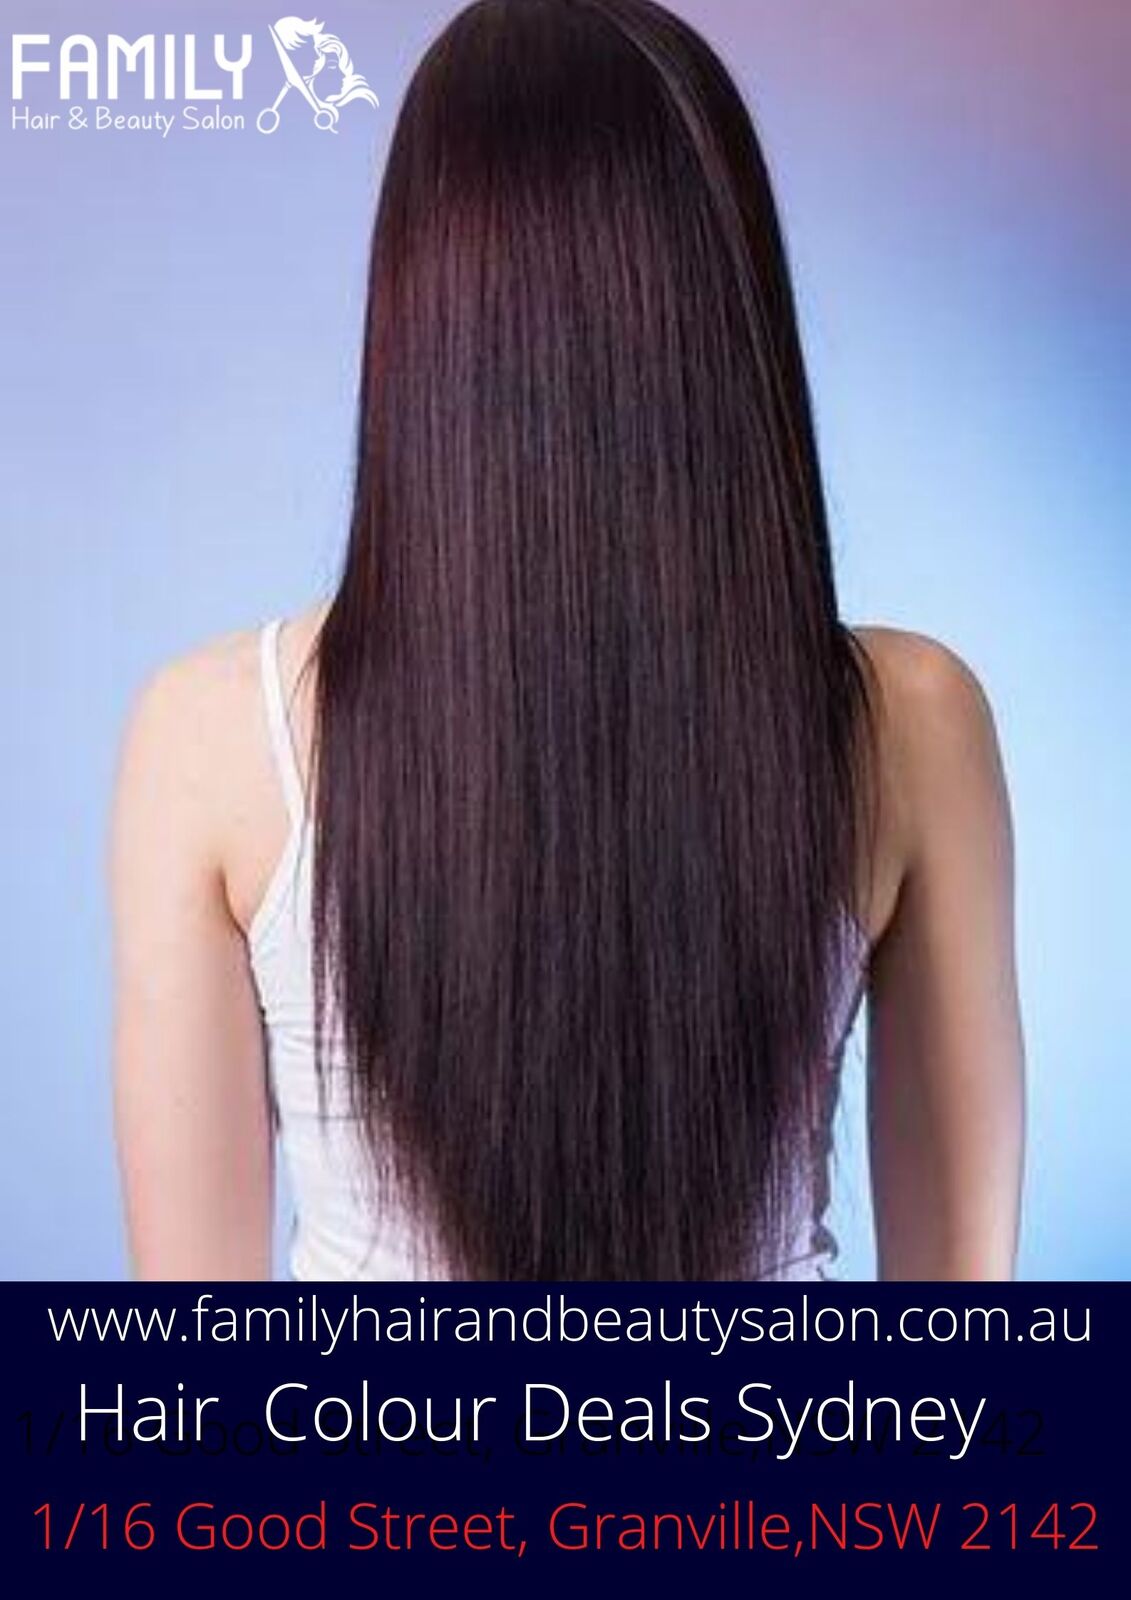 Organic Hair Colour Salon Sydney | Hair Cut and Colour Deals near Me | Cheap Hair Colouring  